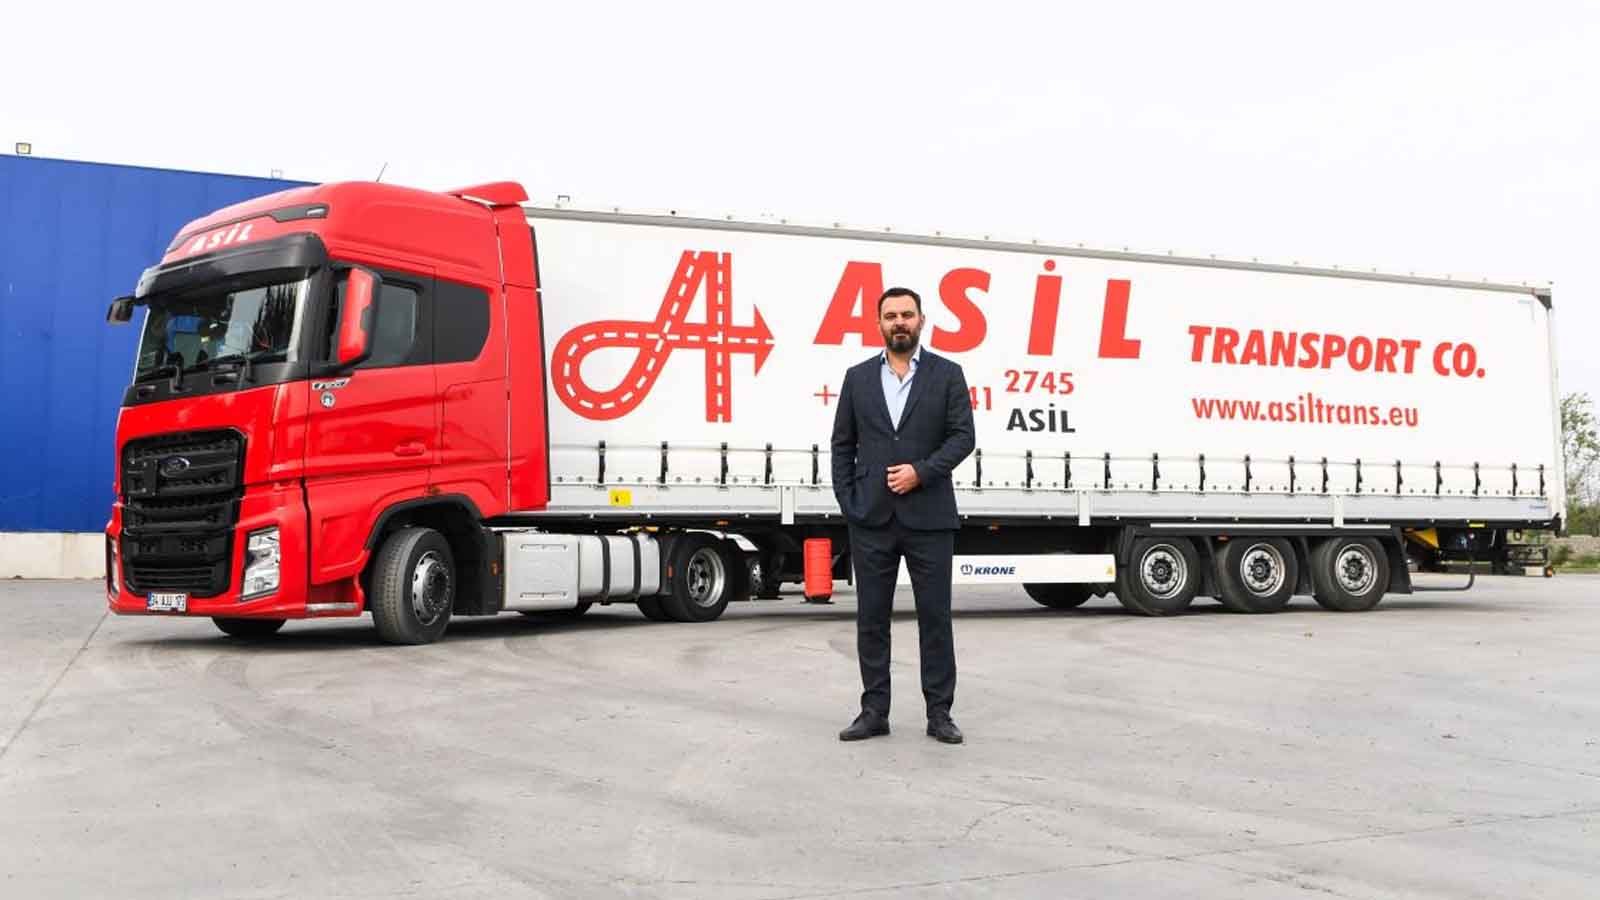 Ticarette Çift Taraflı Sorun: Asil Transport Co. Yöneticisinden Vize Engeline İlişkin Çözüm Önerileri